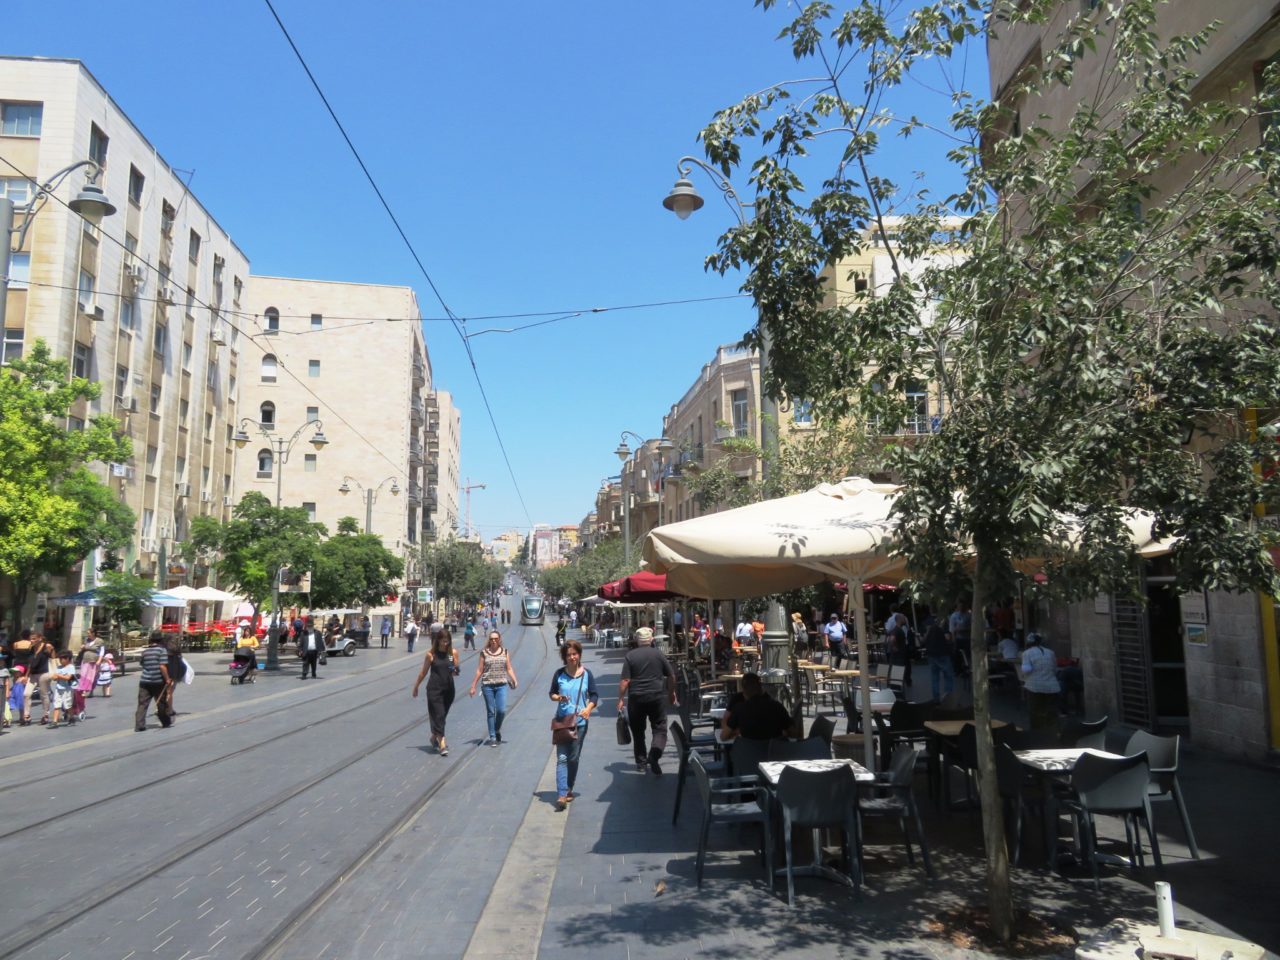 The joys of walking Jerusalem - Jaffa Street in downtown Jerusalem